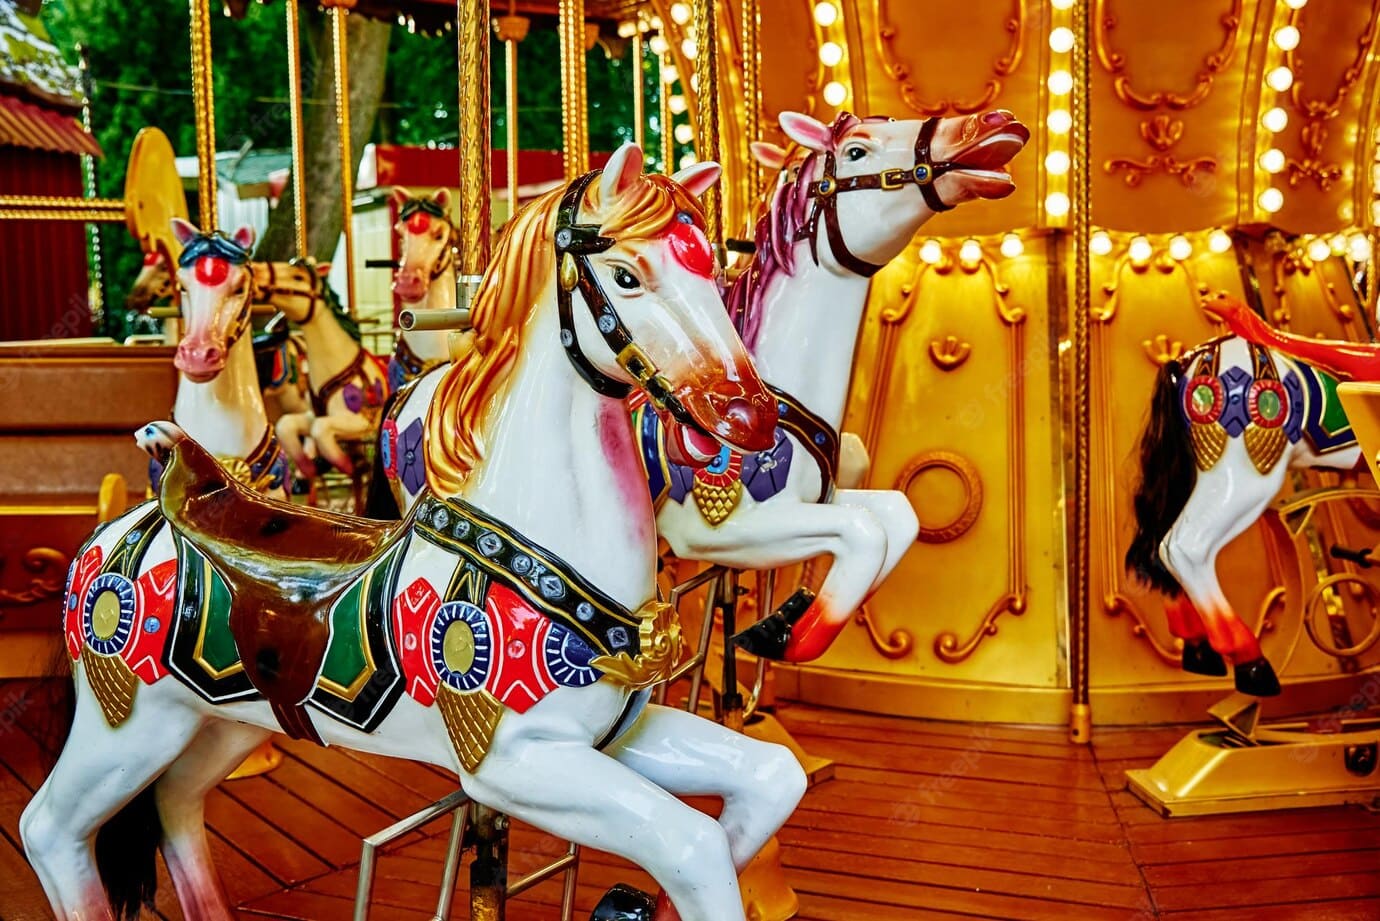 carrusel-coloridos-caballos-parque-atracciones-carrusel-caballo-atraccion-paseo-vintage-ninos_77190-8233